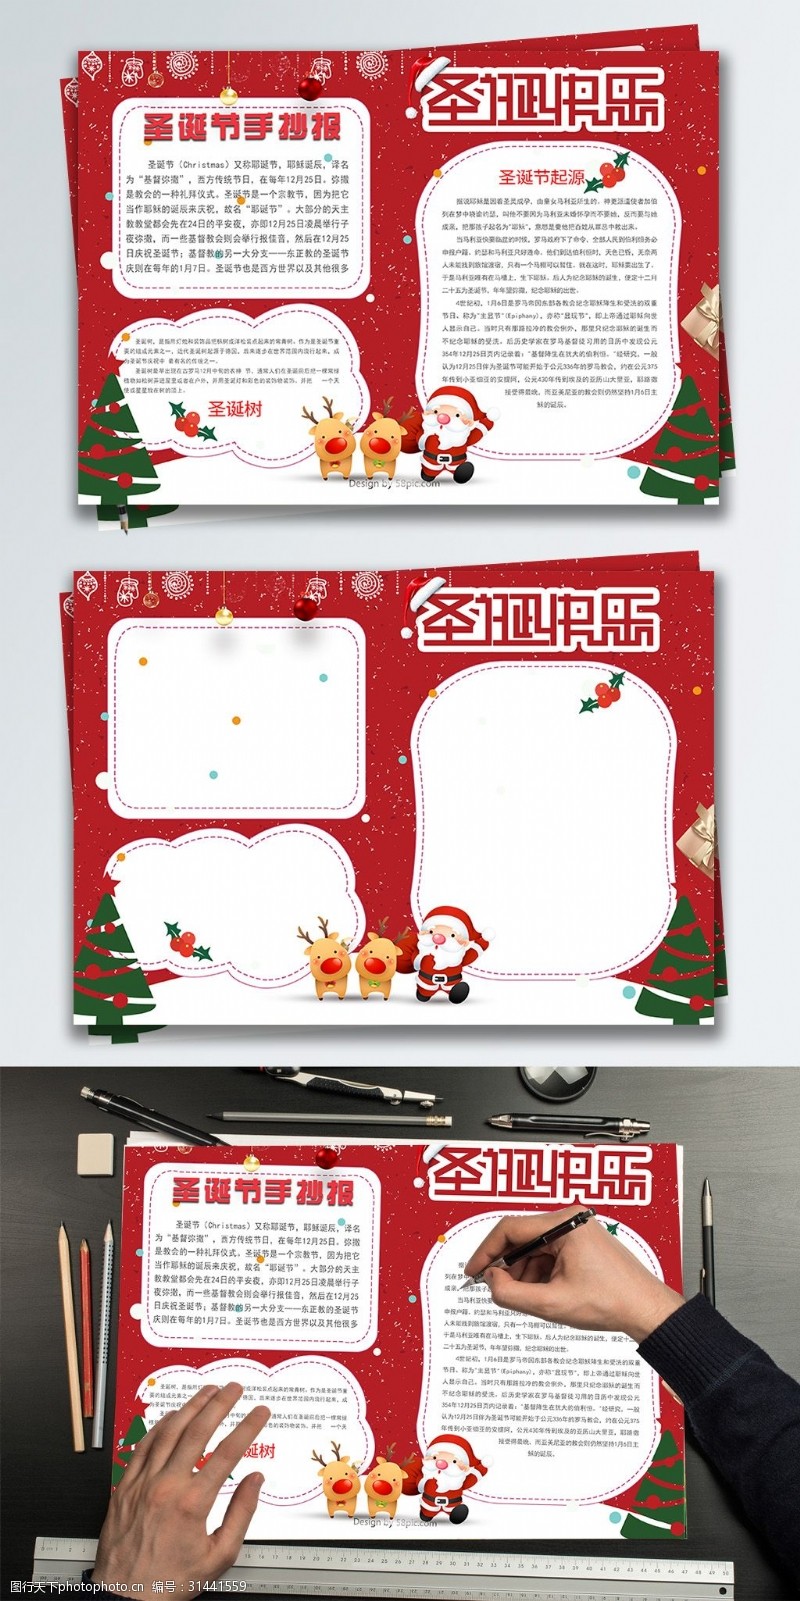 手抄报模板红色简约圣诞节日手抄报设计PSD模板